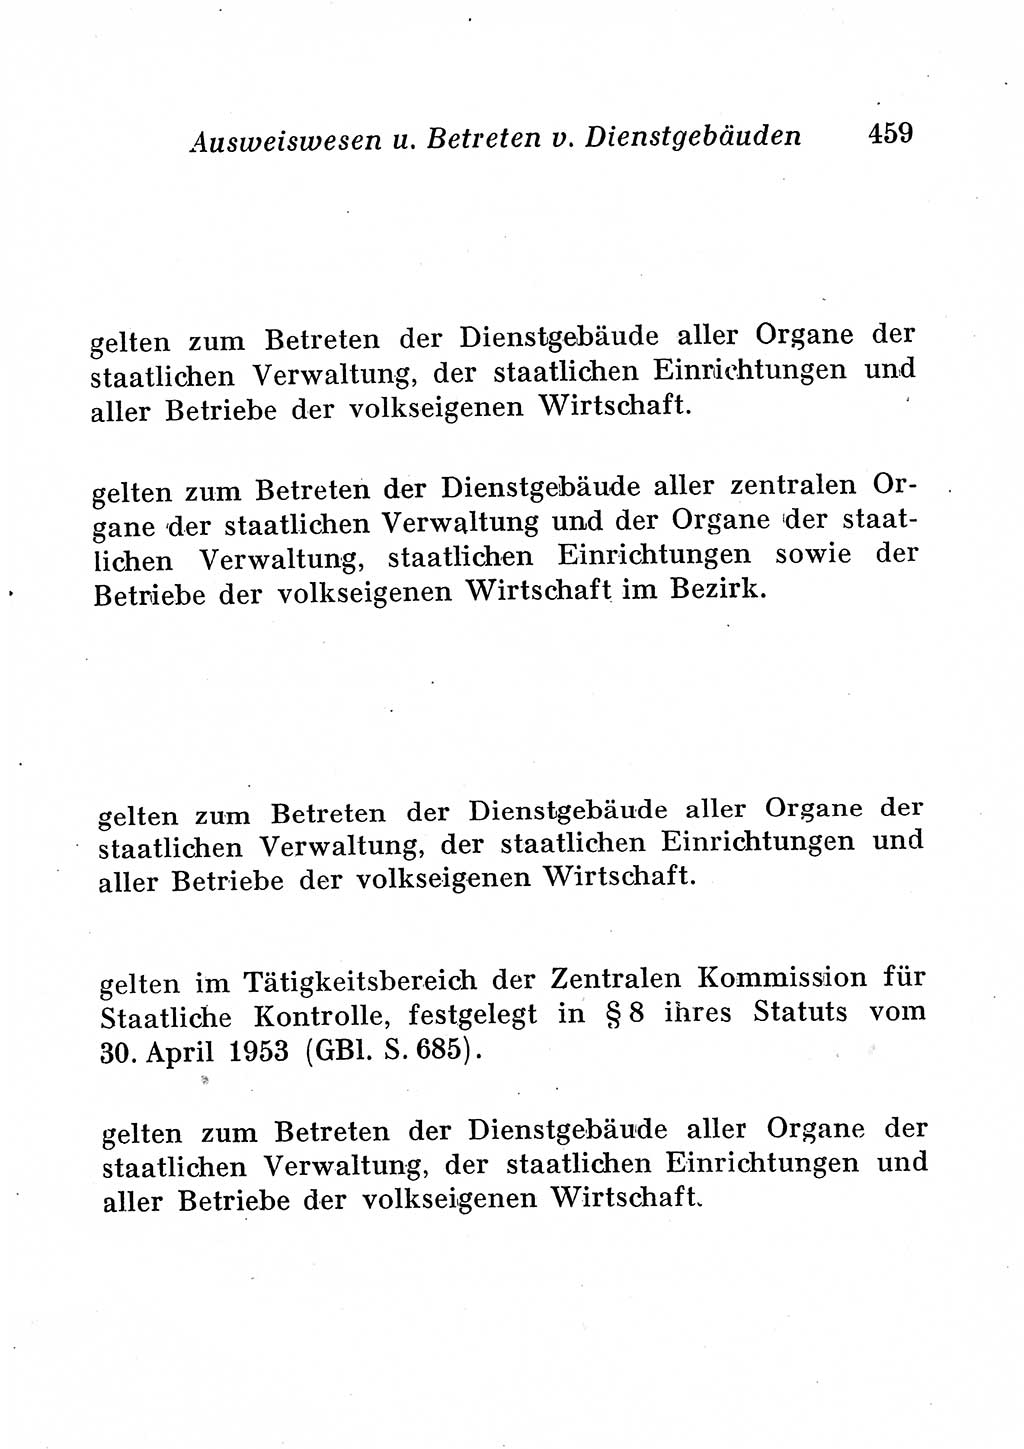 Staats- und verwaltungsrechtliche Gesetze der Deutschen Demokratischen Republik (DDR) 1958, Seite 459 (StVerwR Ges. DDR 1958, S. 459)